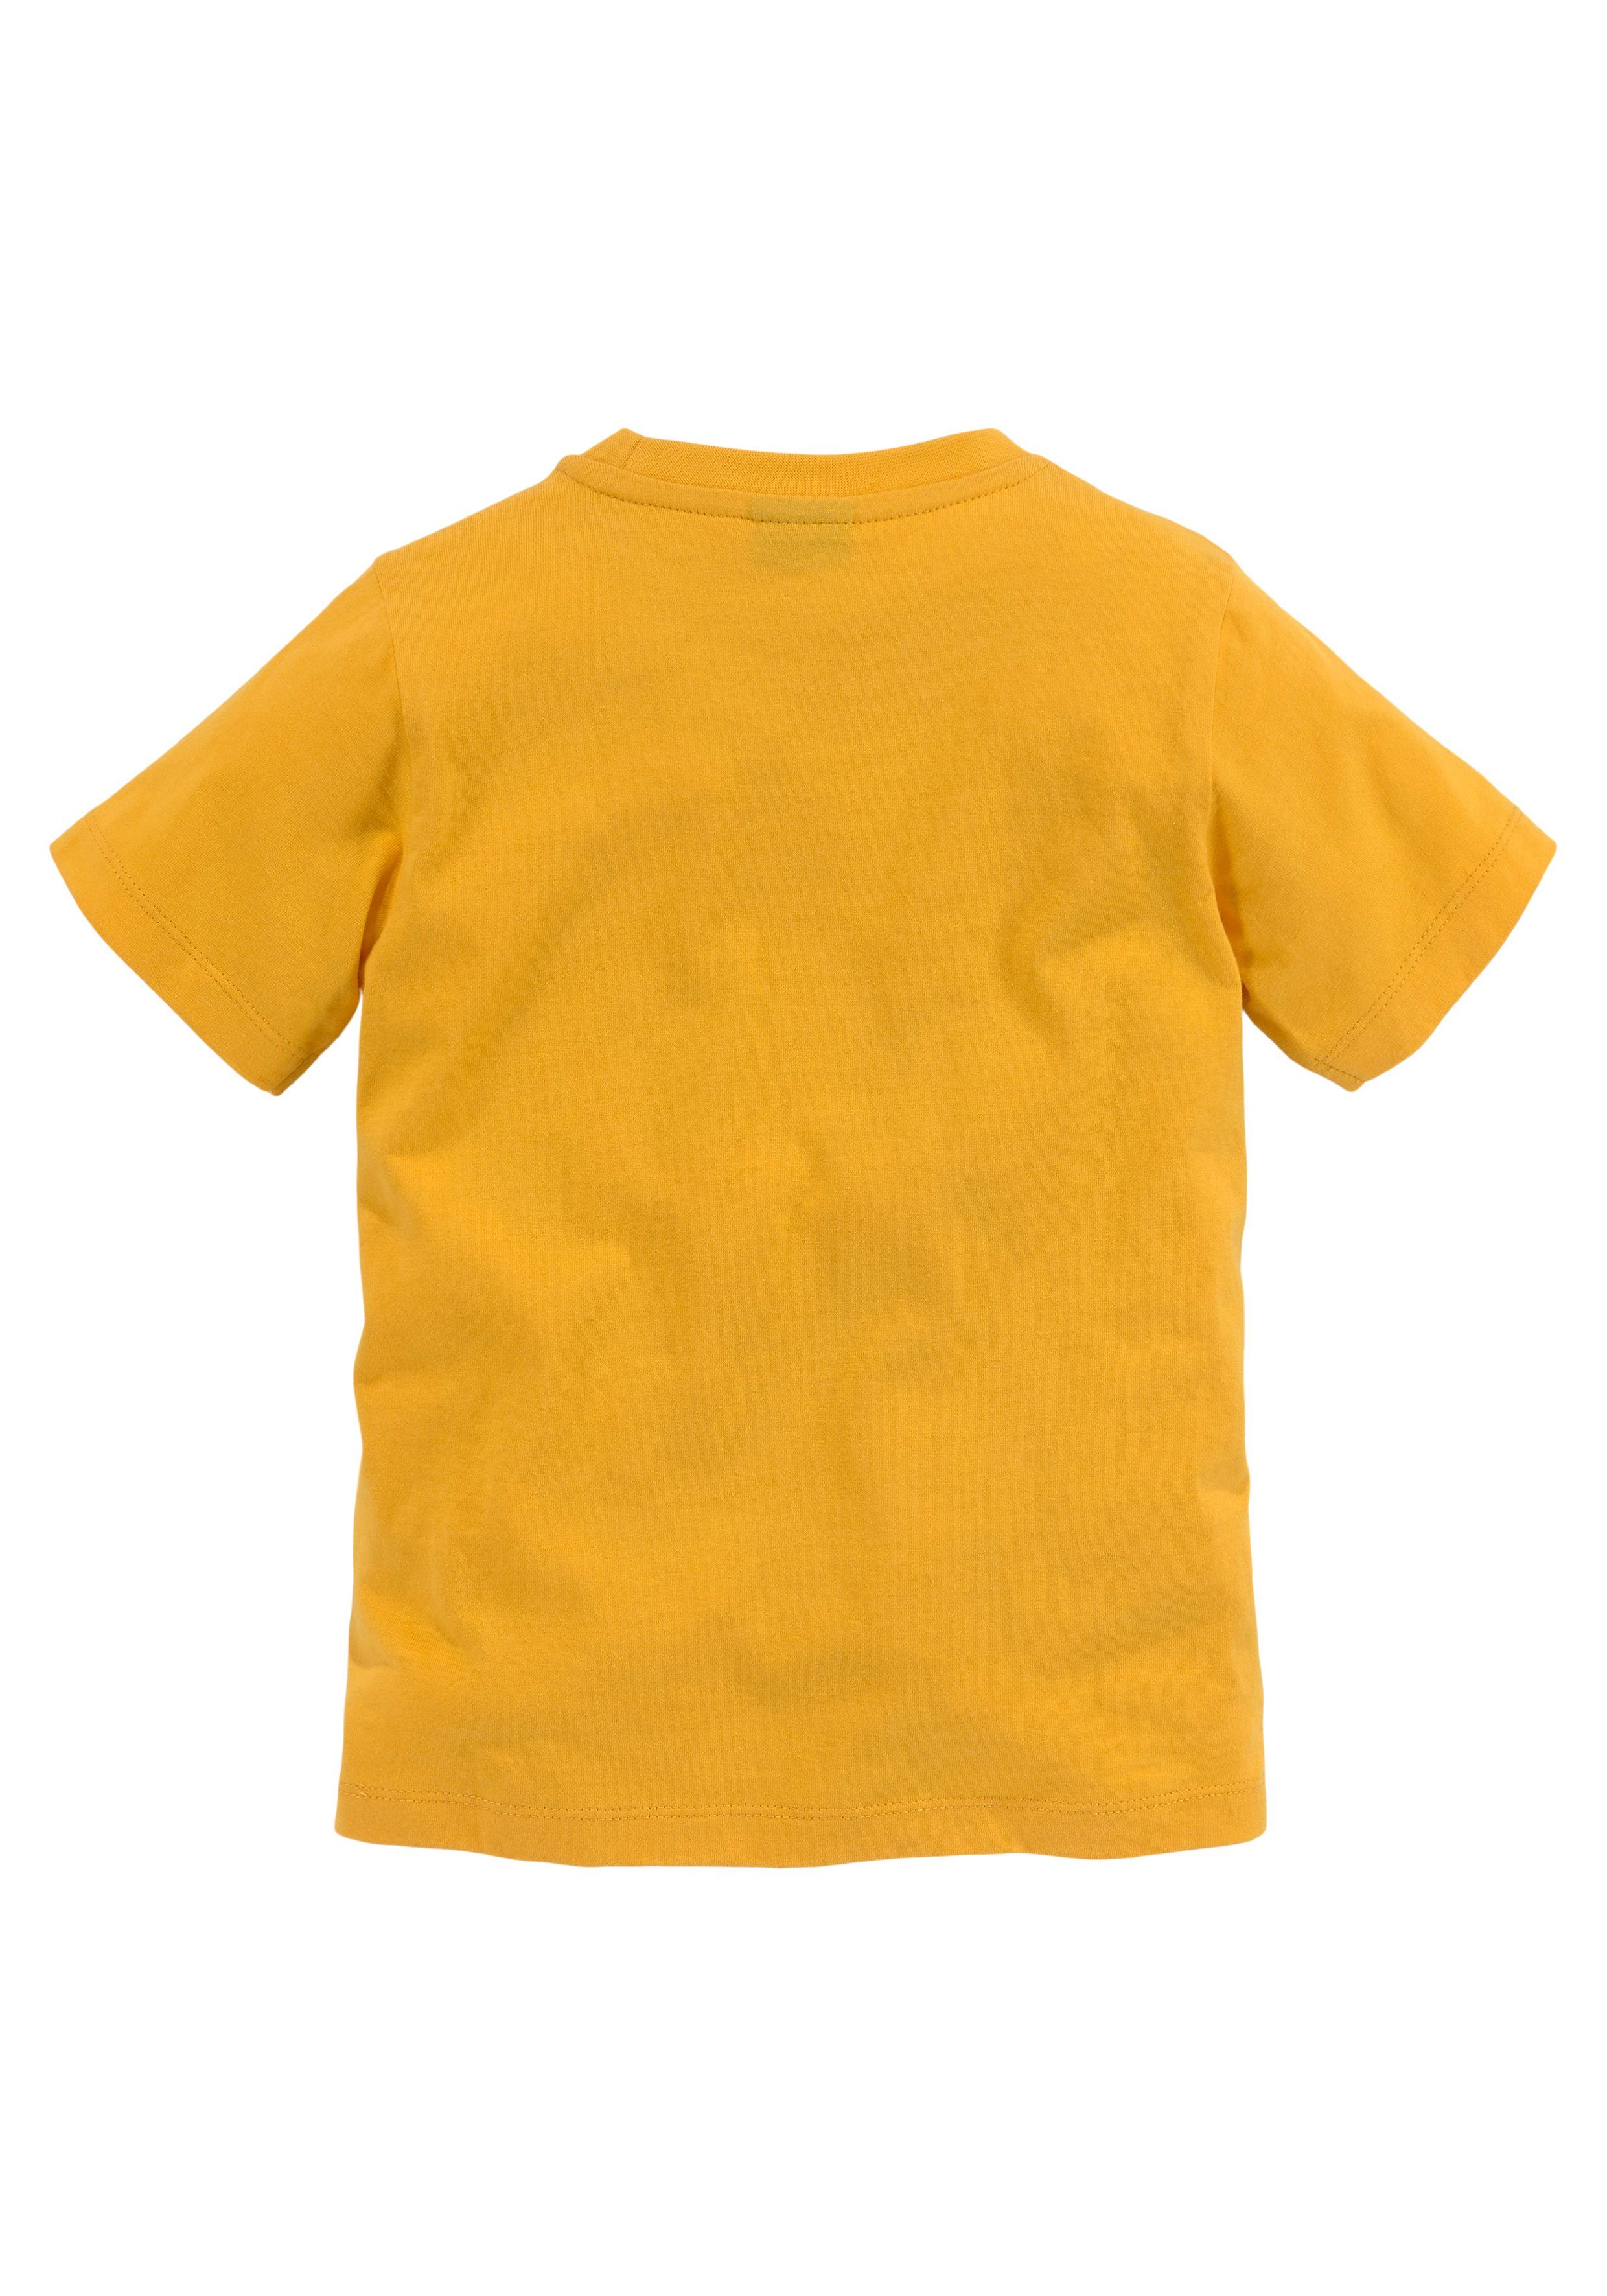 TIGER LITTLE KIDSWORLD T-Shirt